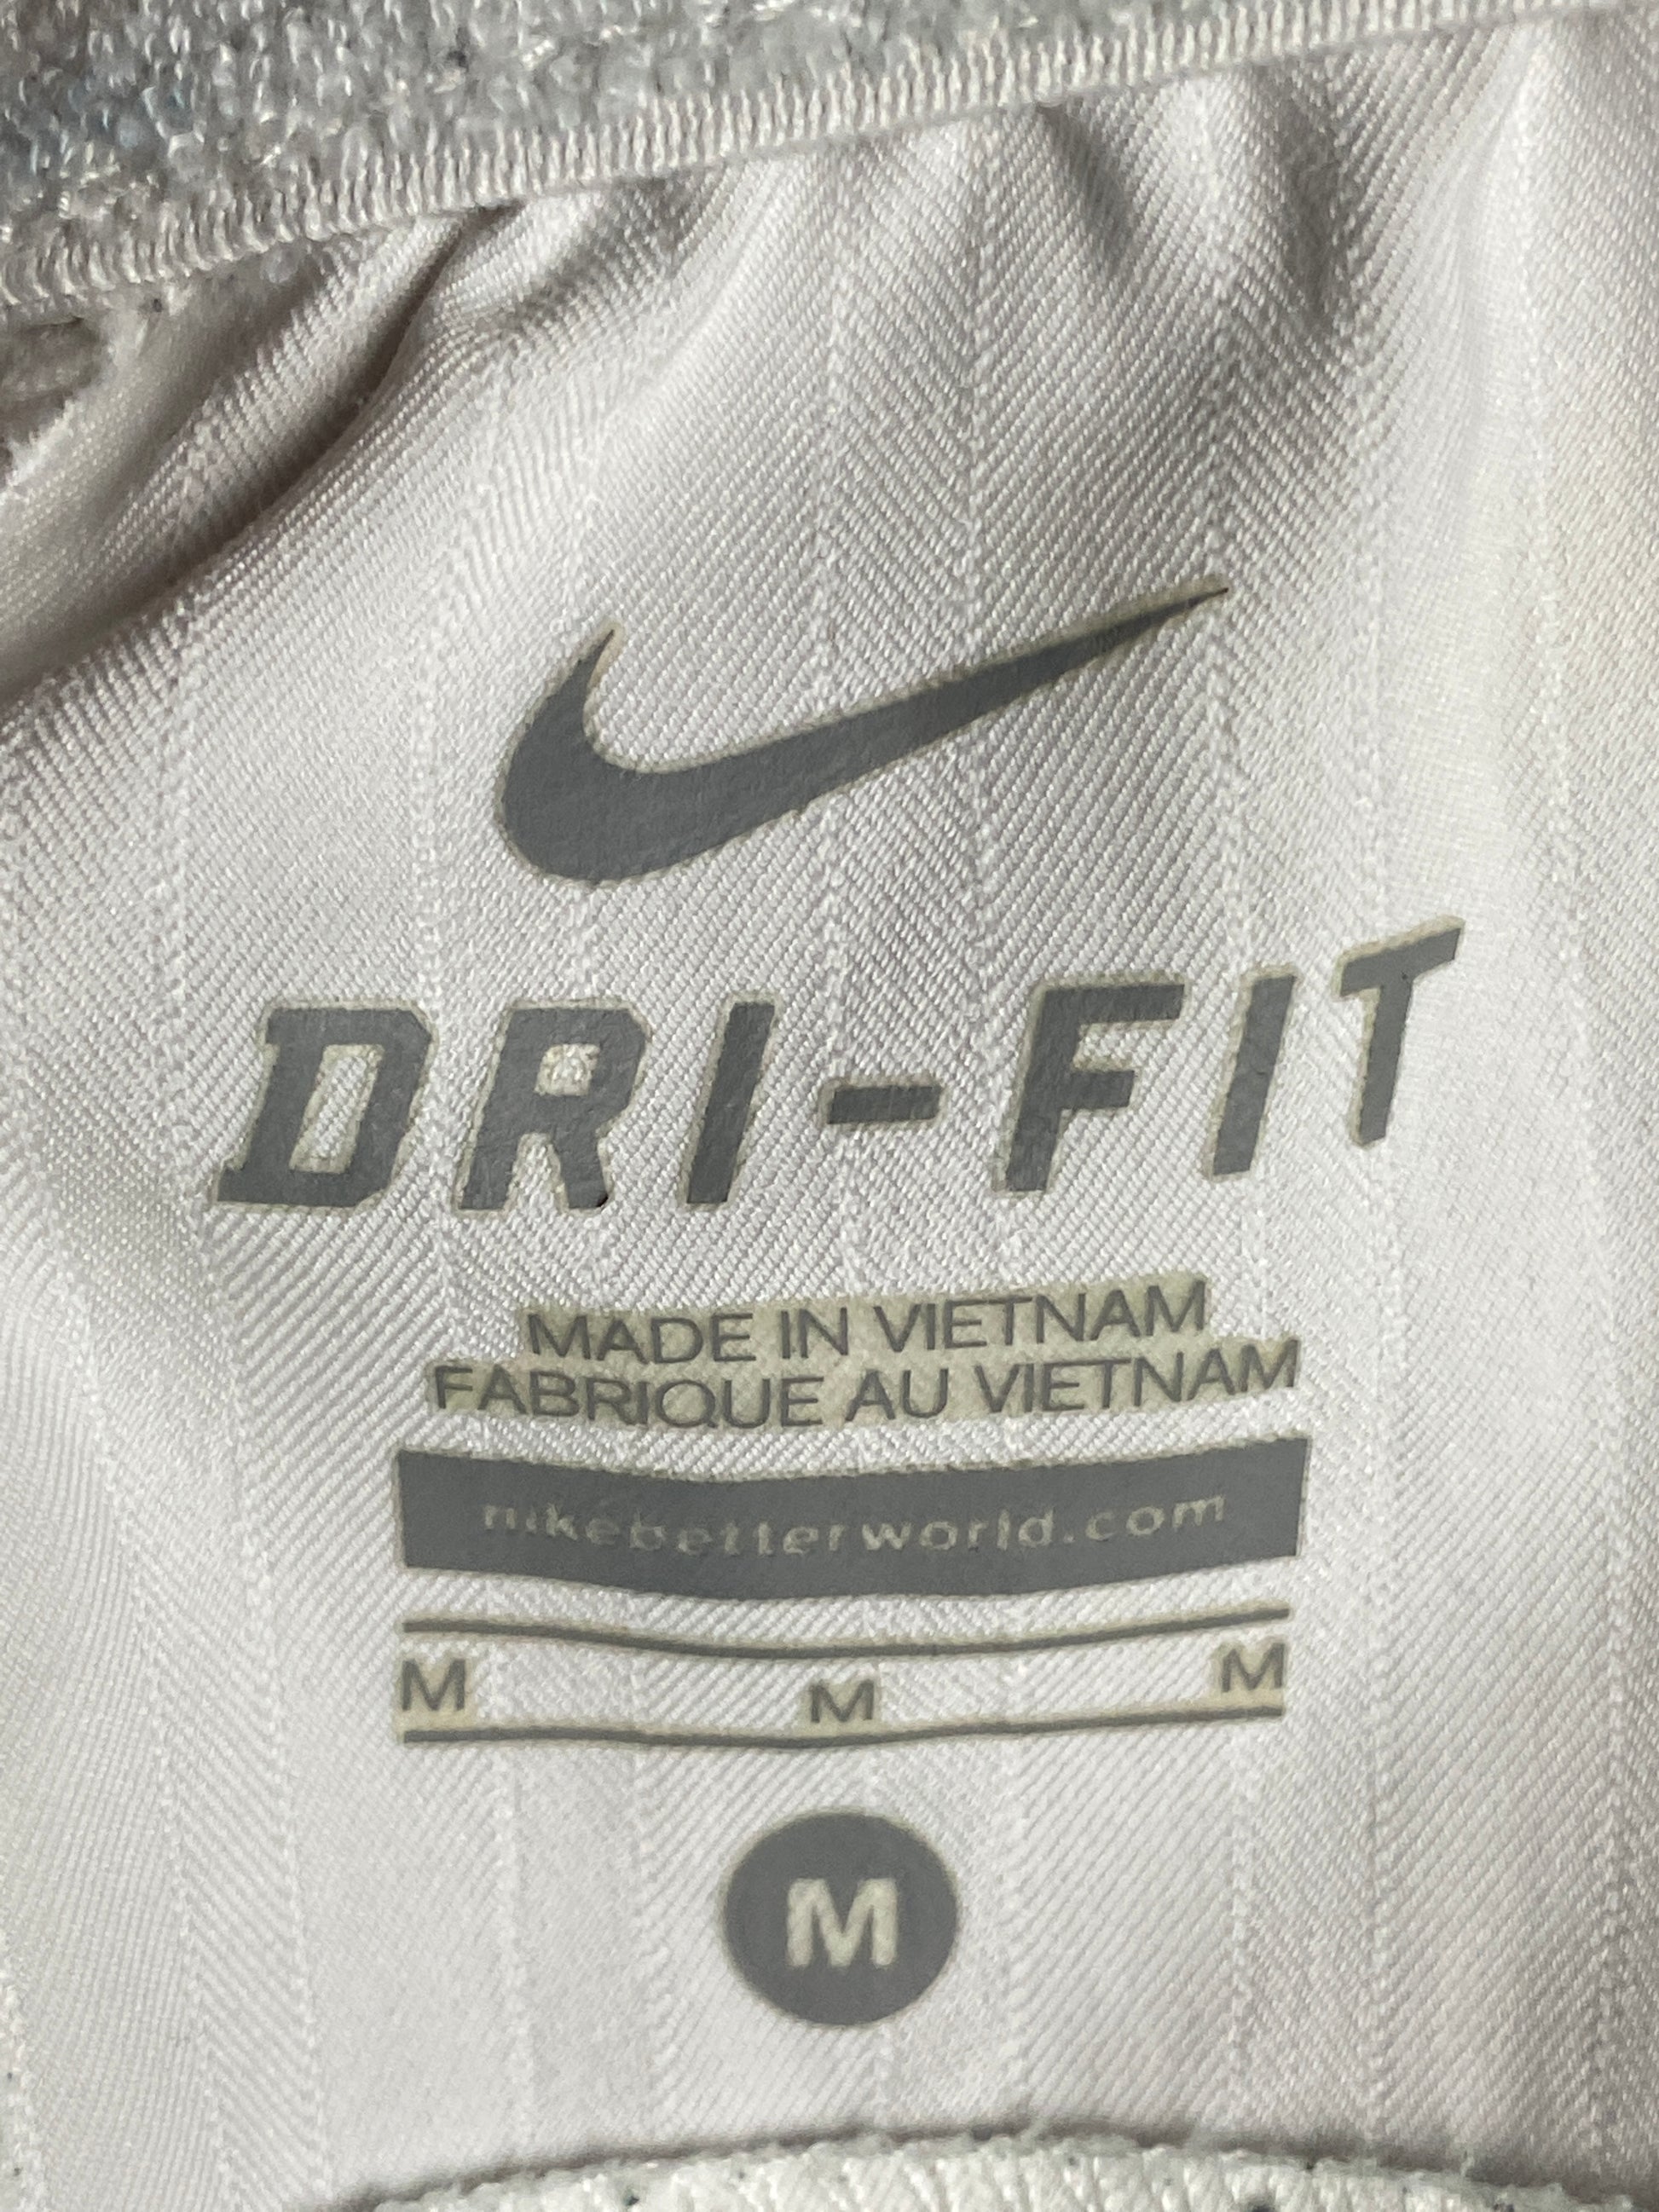 Nike Vintage Men's Track Shorts - Medium Navy White Polyester